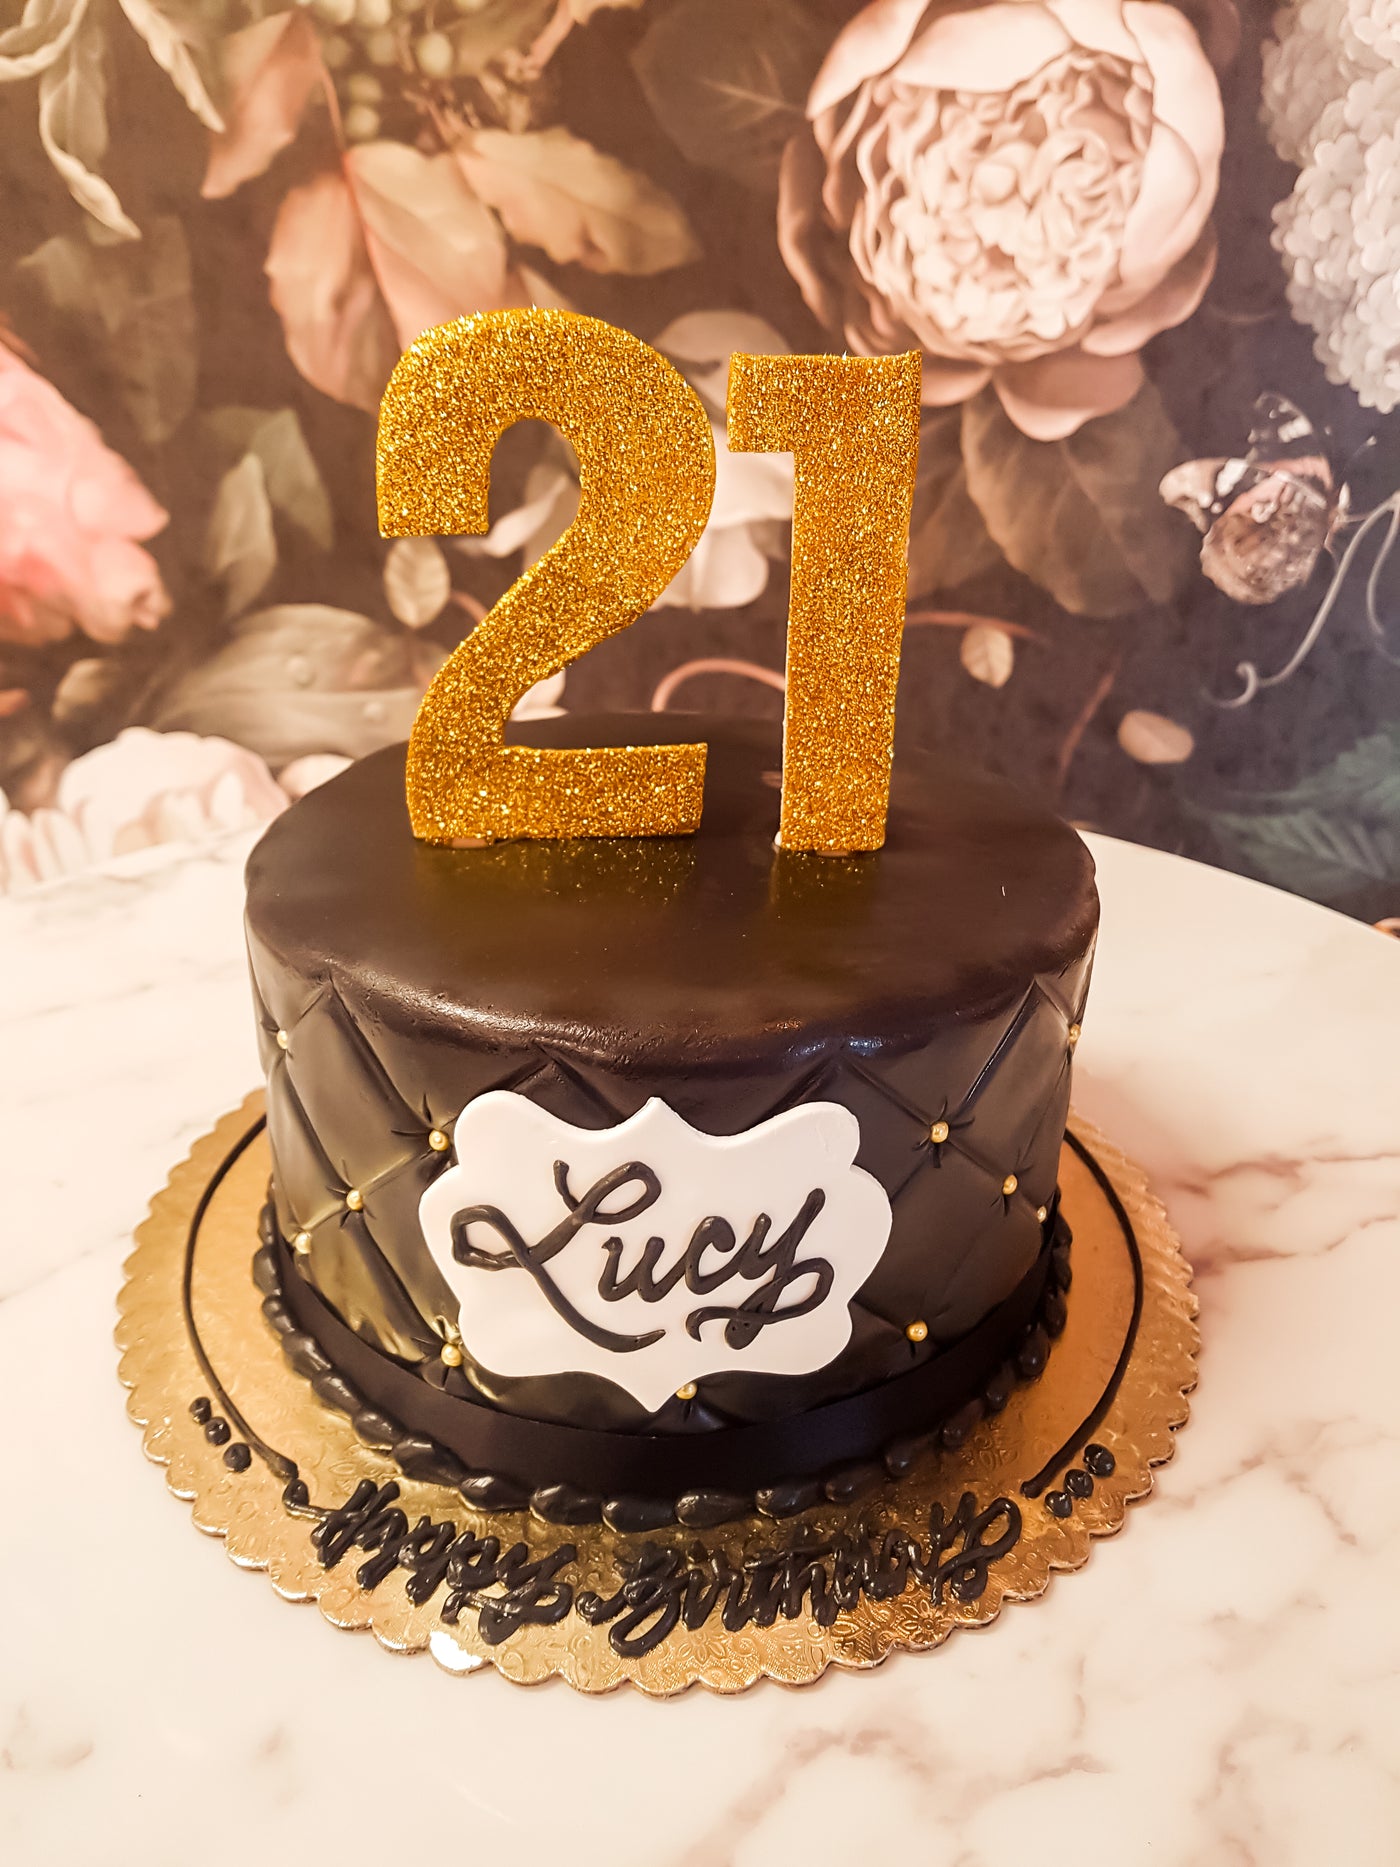 black cake girl cake black quilt cake sexy bestseller cake 21st birthday cake